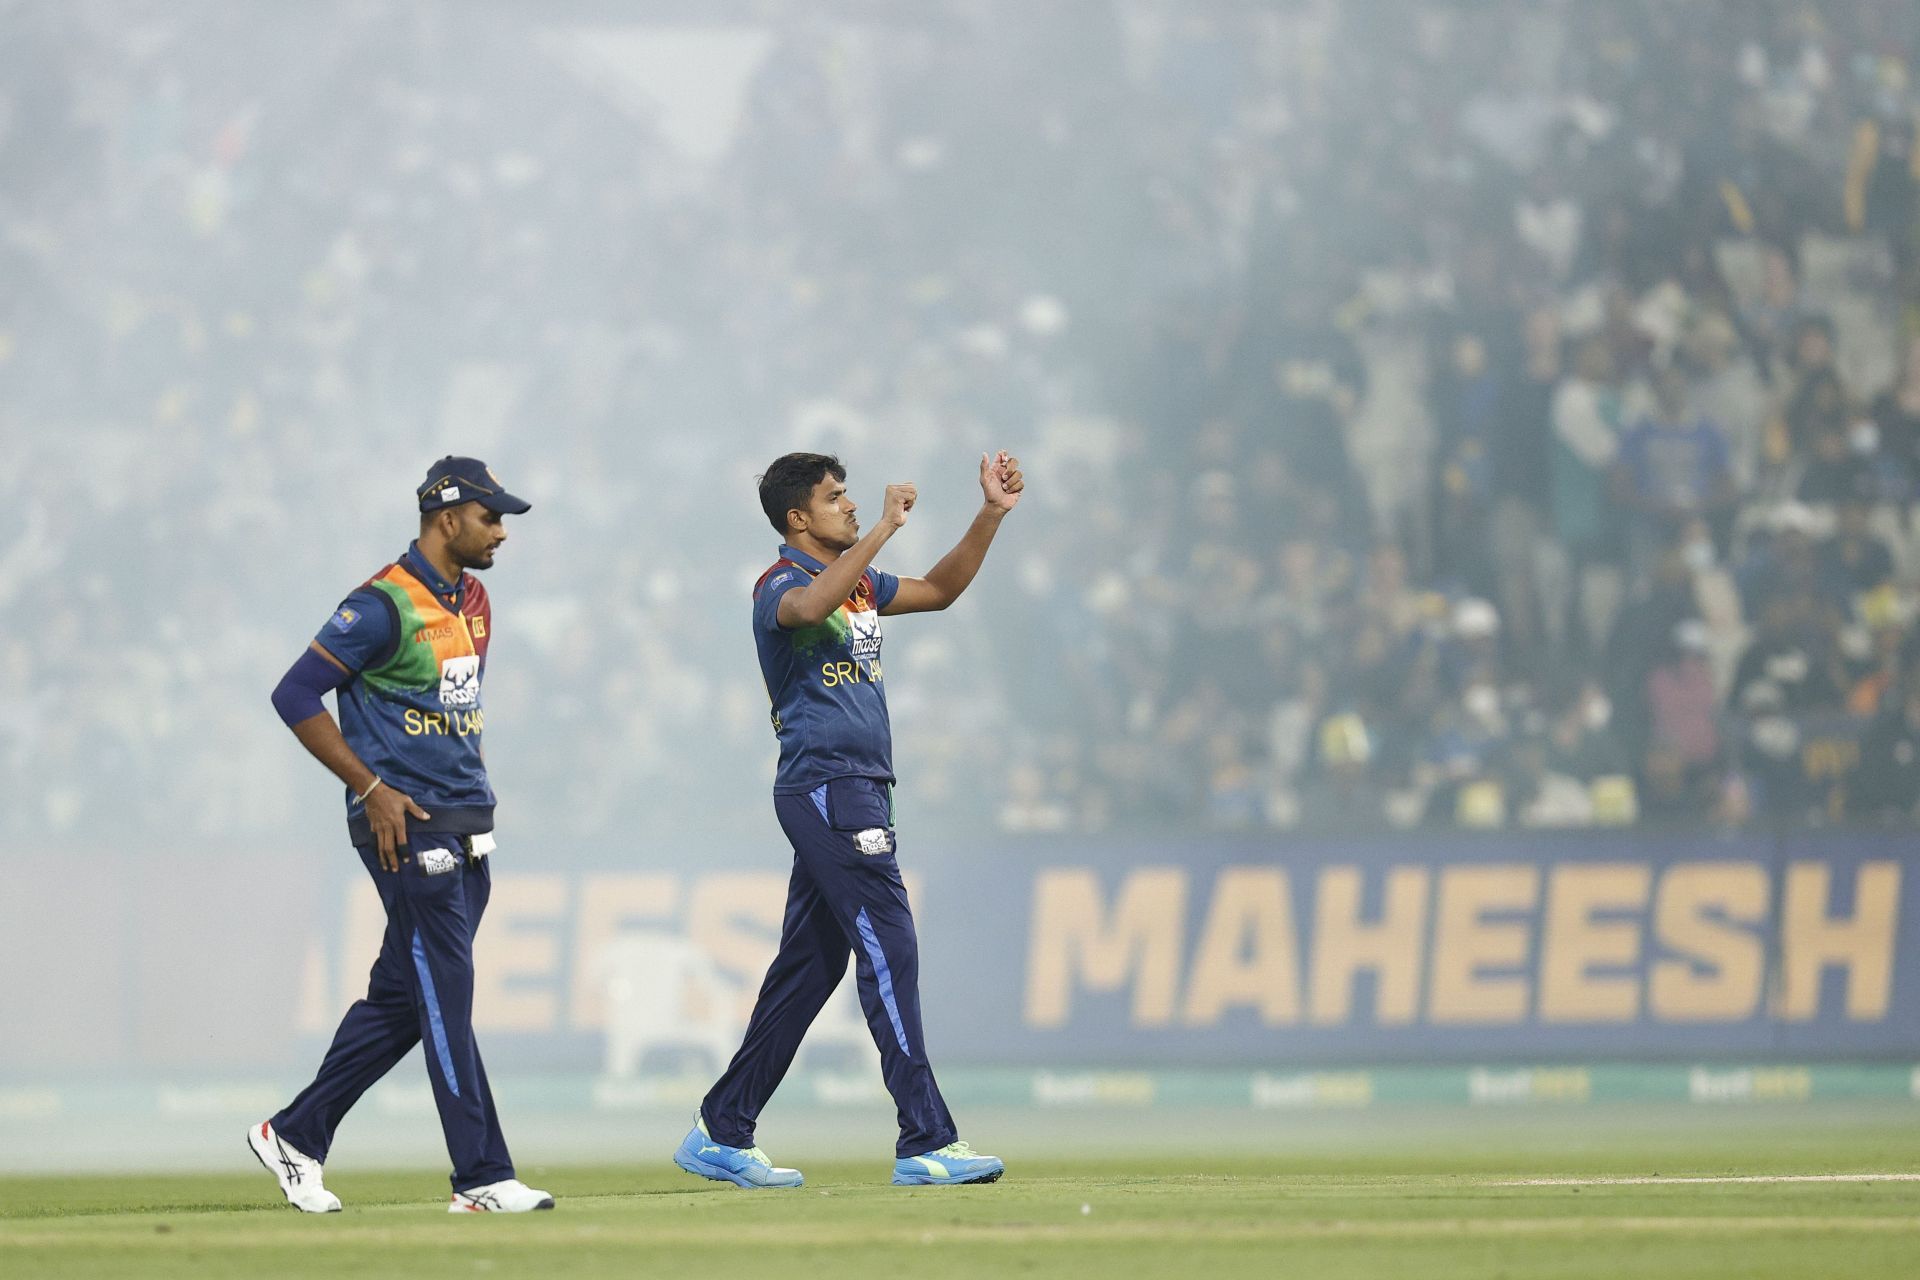 Australia v Sri Lanka - T20 Series: Game 4 (Image courtesy: Getty Images)